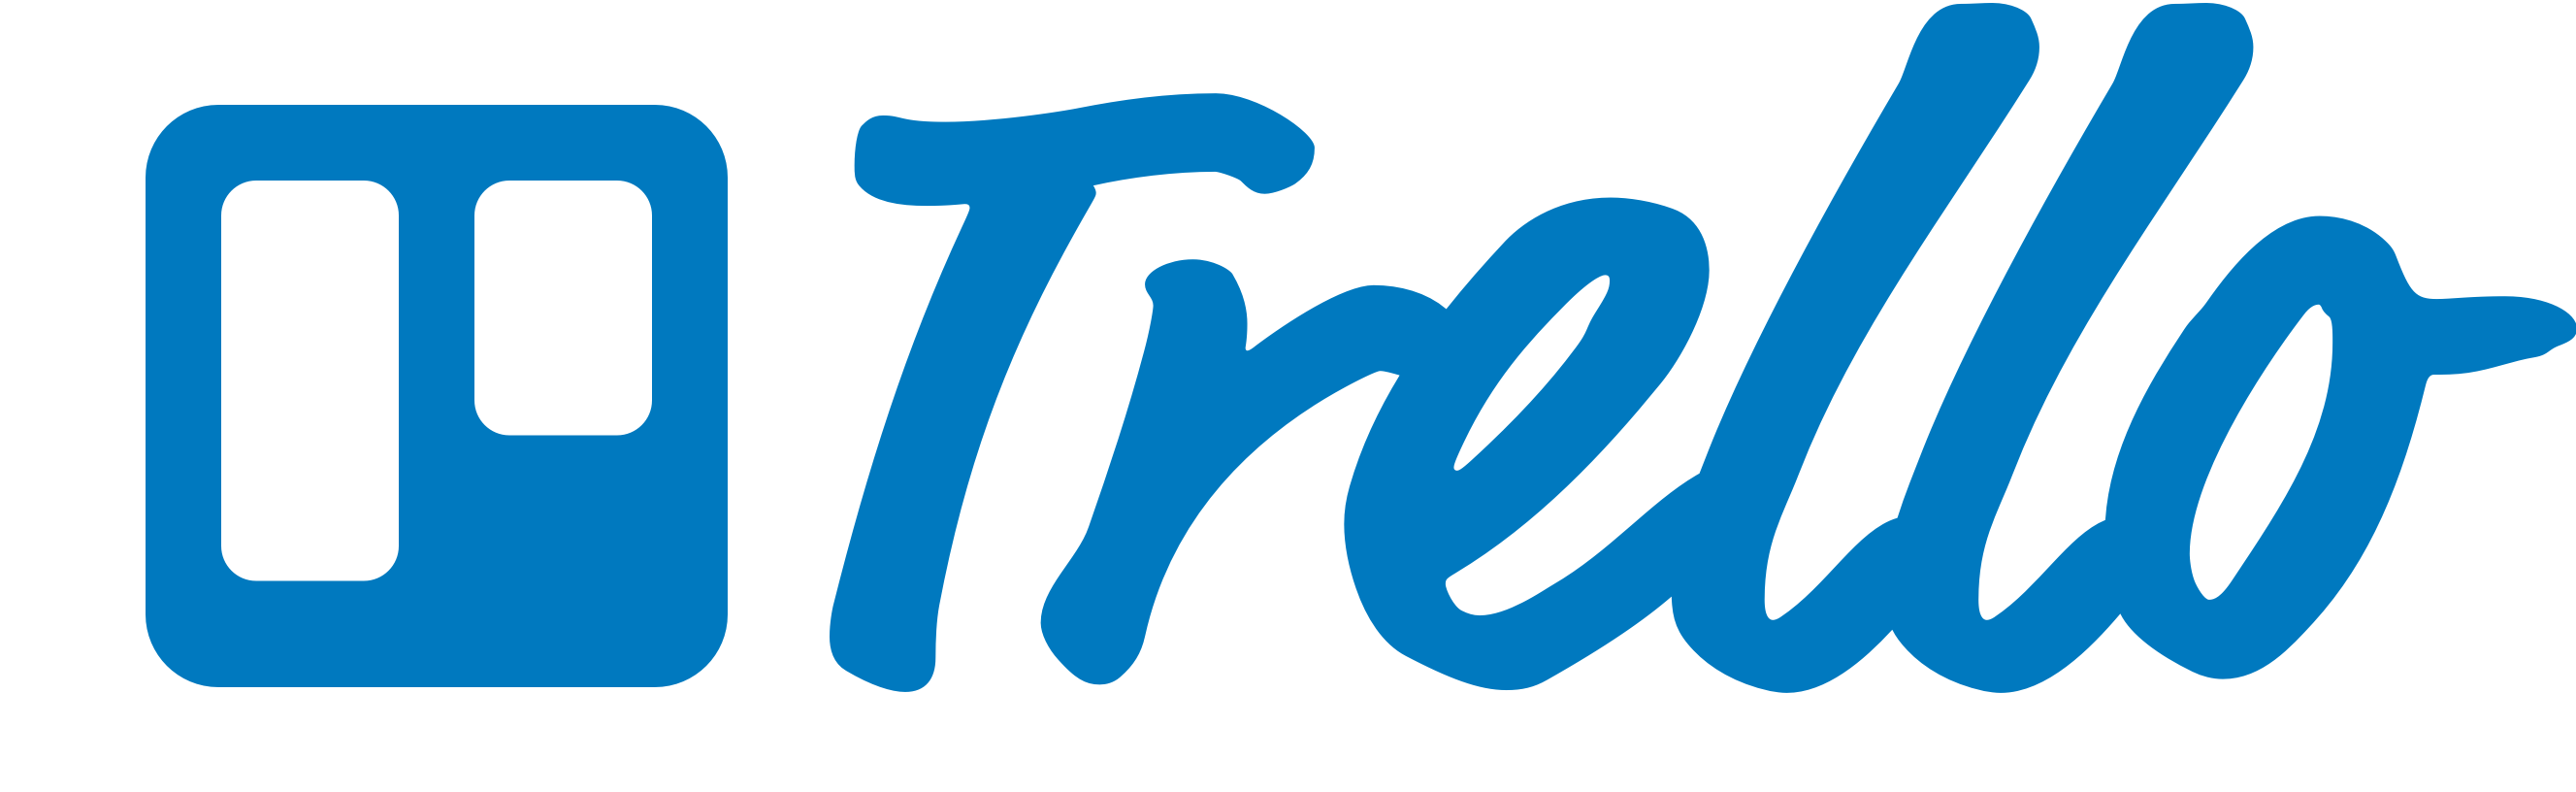 Trello Brand Assets - Click t